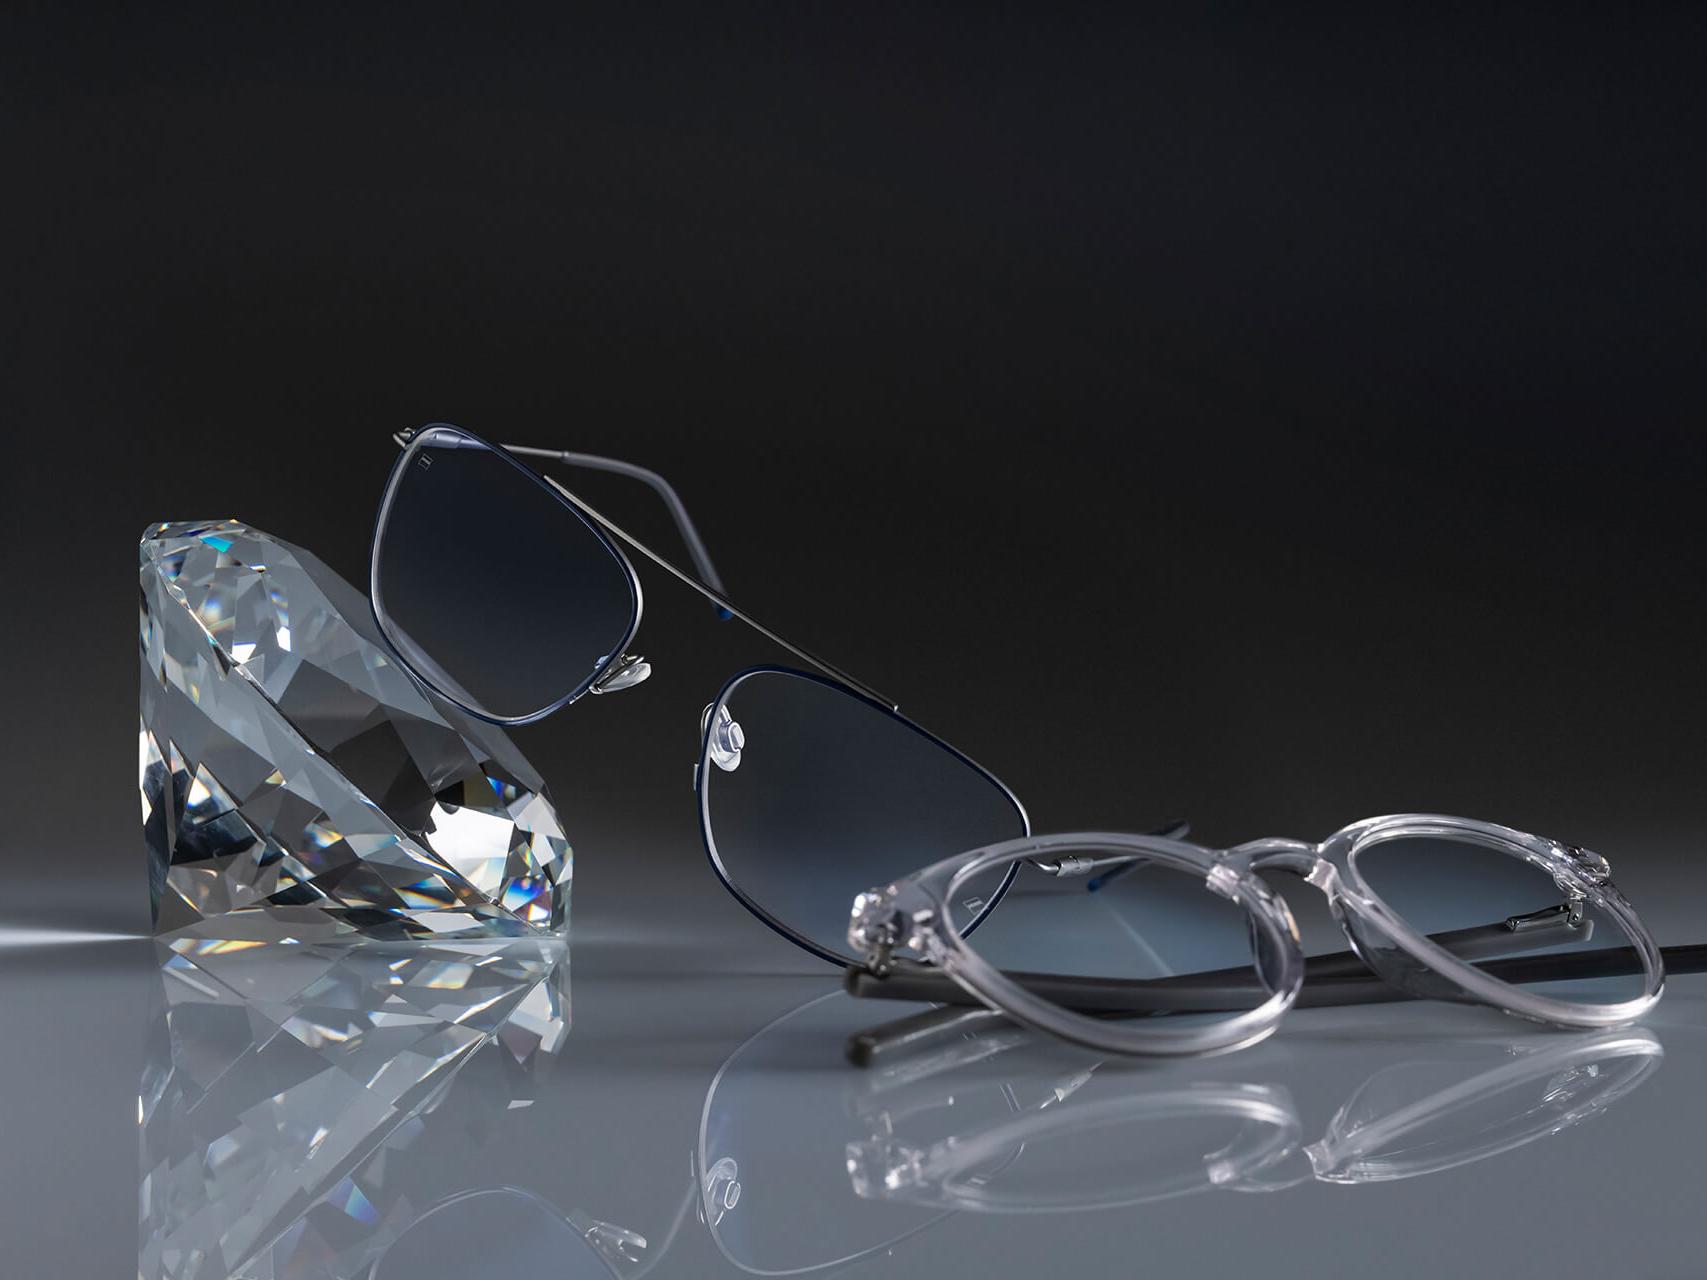 Dois pares de óculos com lentes ZEISS que têm o revestimento de lente mais duro possível – DuraVision® Platinum. Um par de óculos encostado em um cristal, o outro está no chão. Ambos têm lentes lentes incolores sem reflexo azulado.